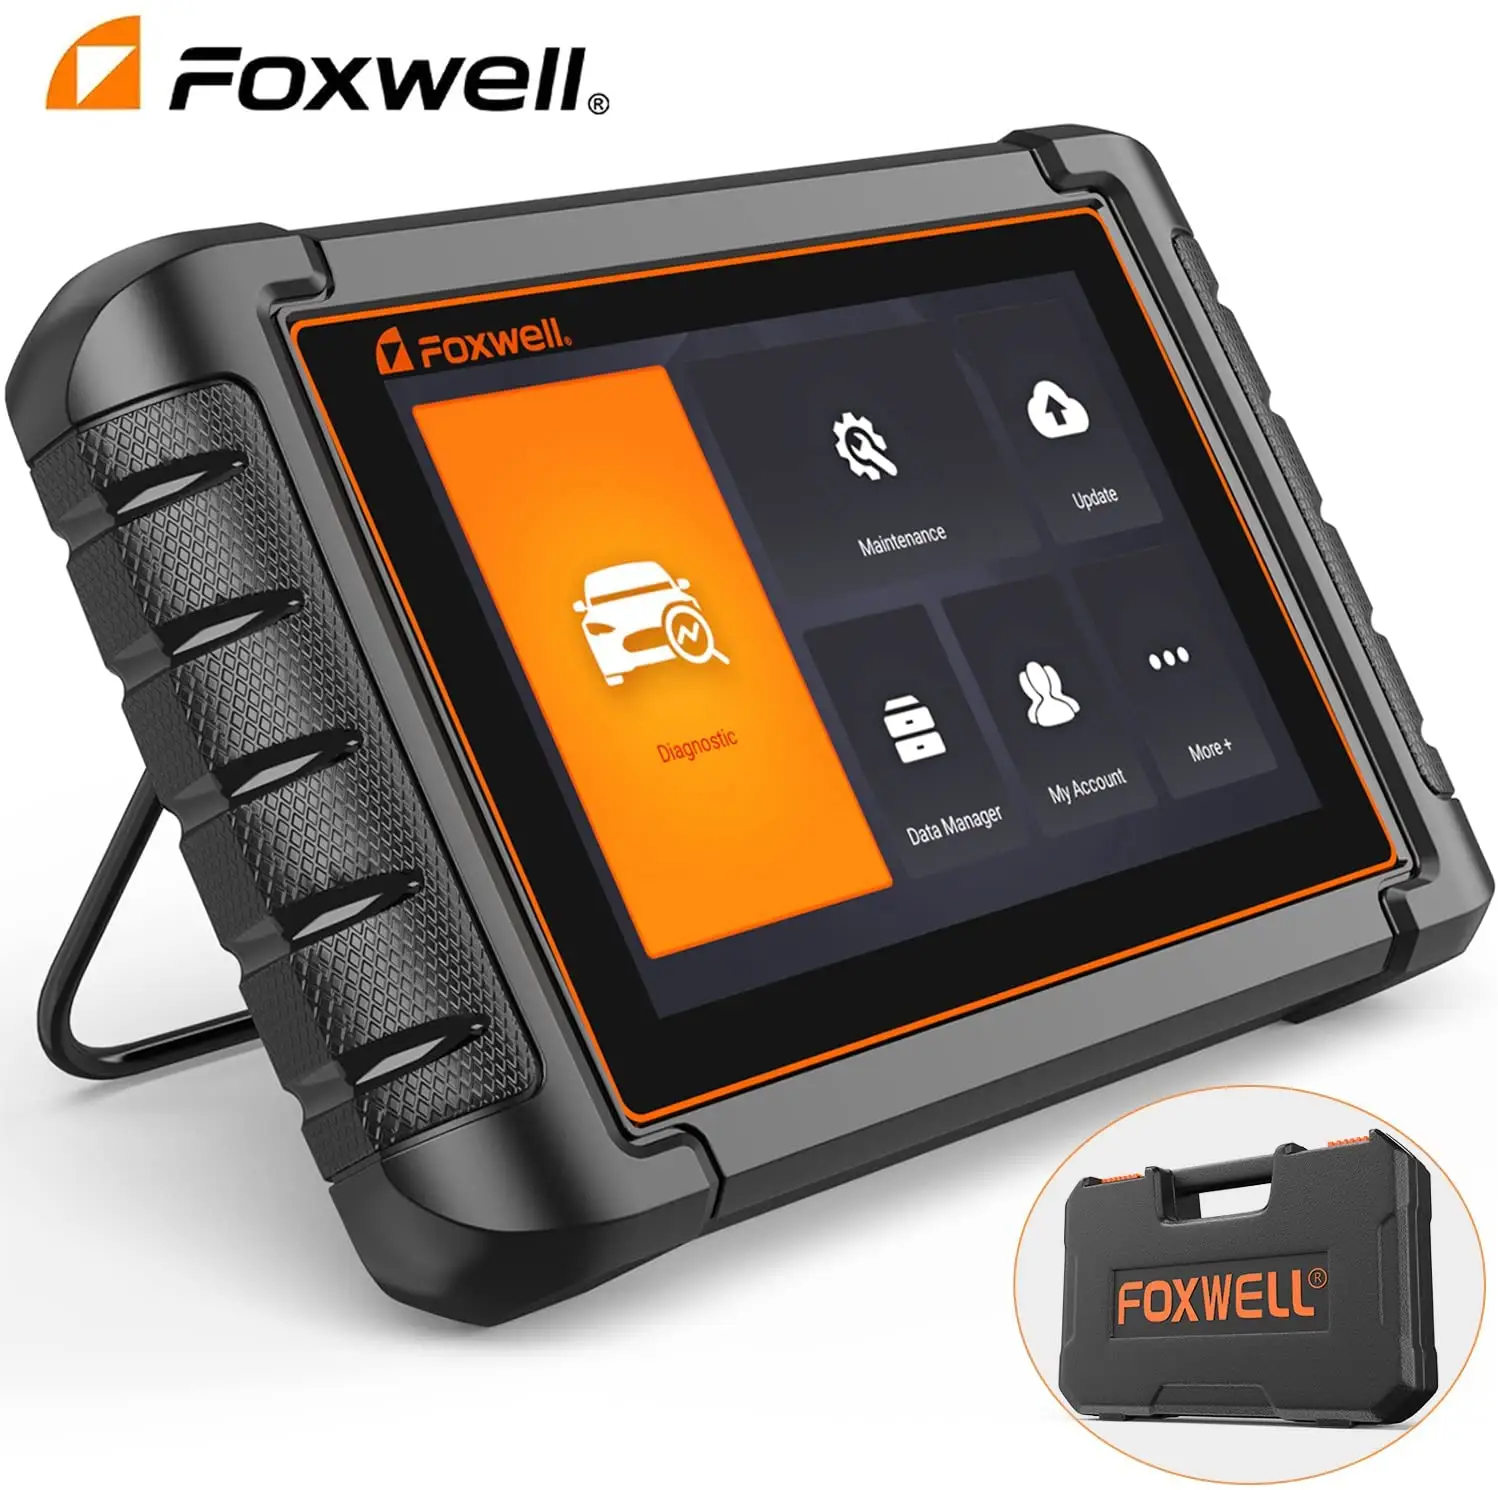 Foxwell çift yönlü kontrol hizmetleri OE tüm sistemler teşhis otomotiv teşhis tarama aracı